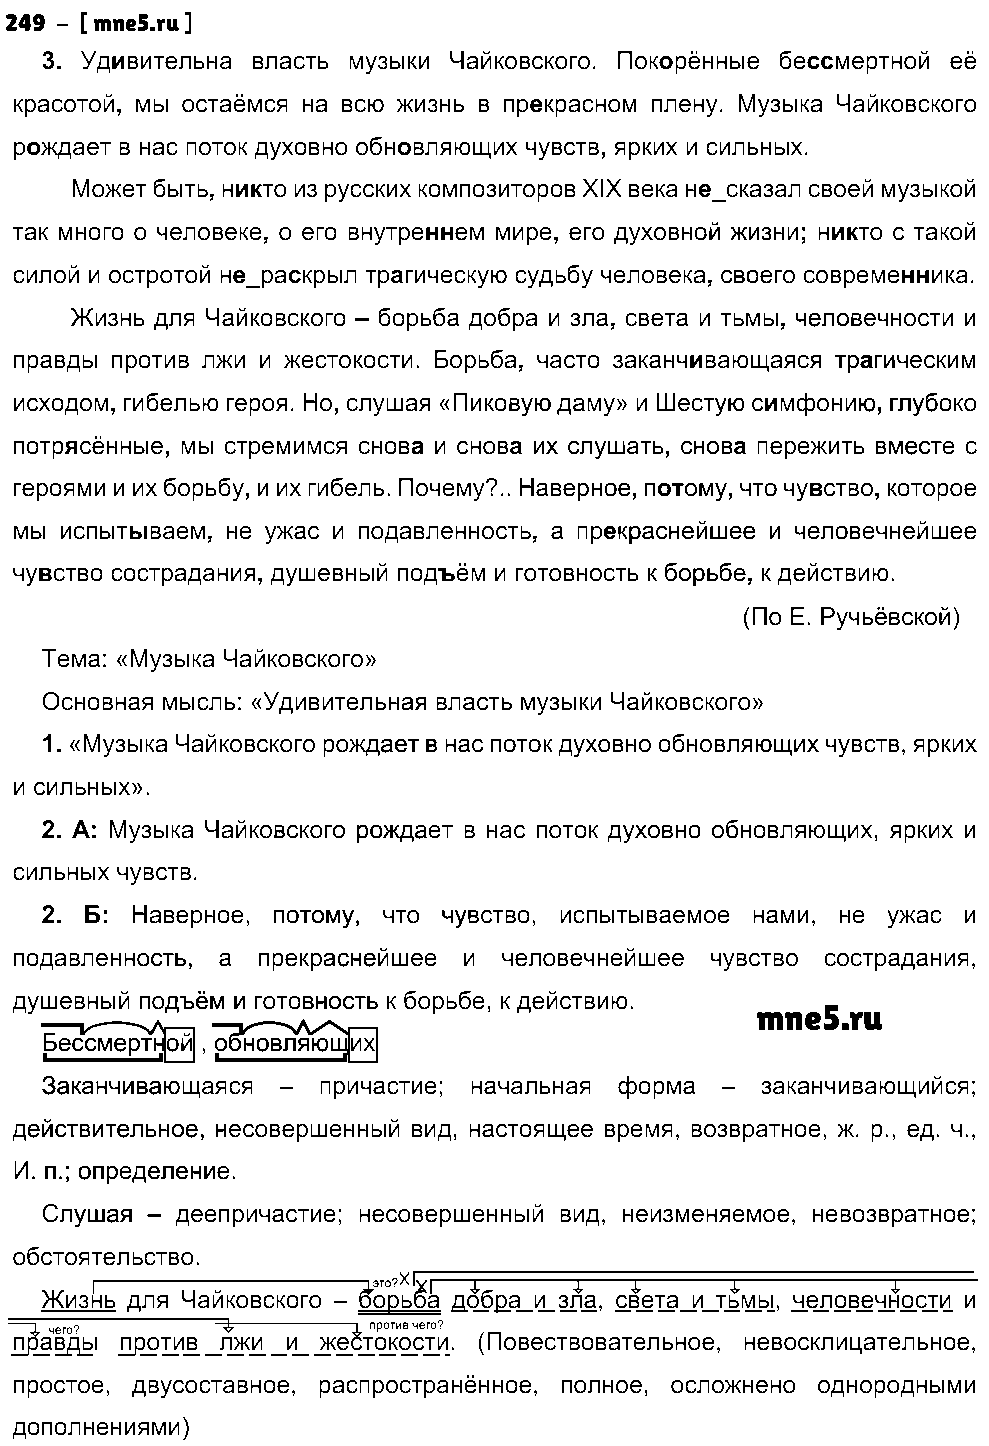 ГДЗ Русский язык 8 класс - 249